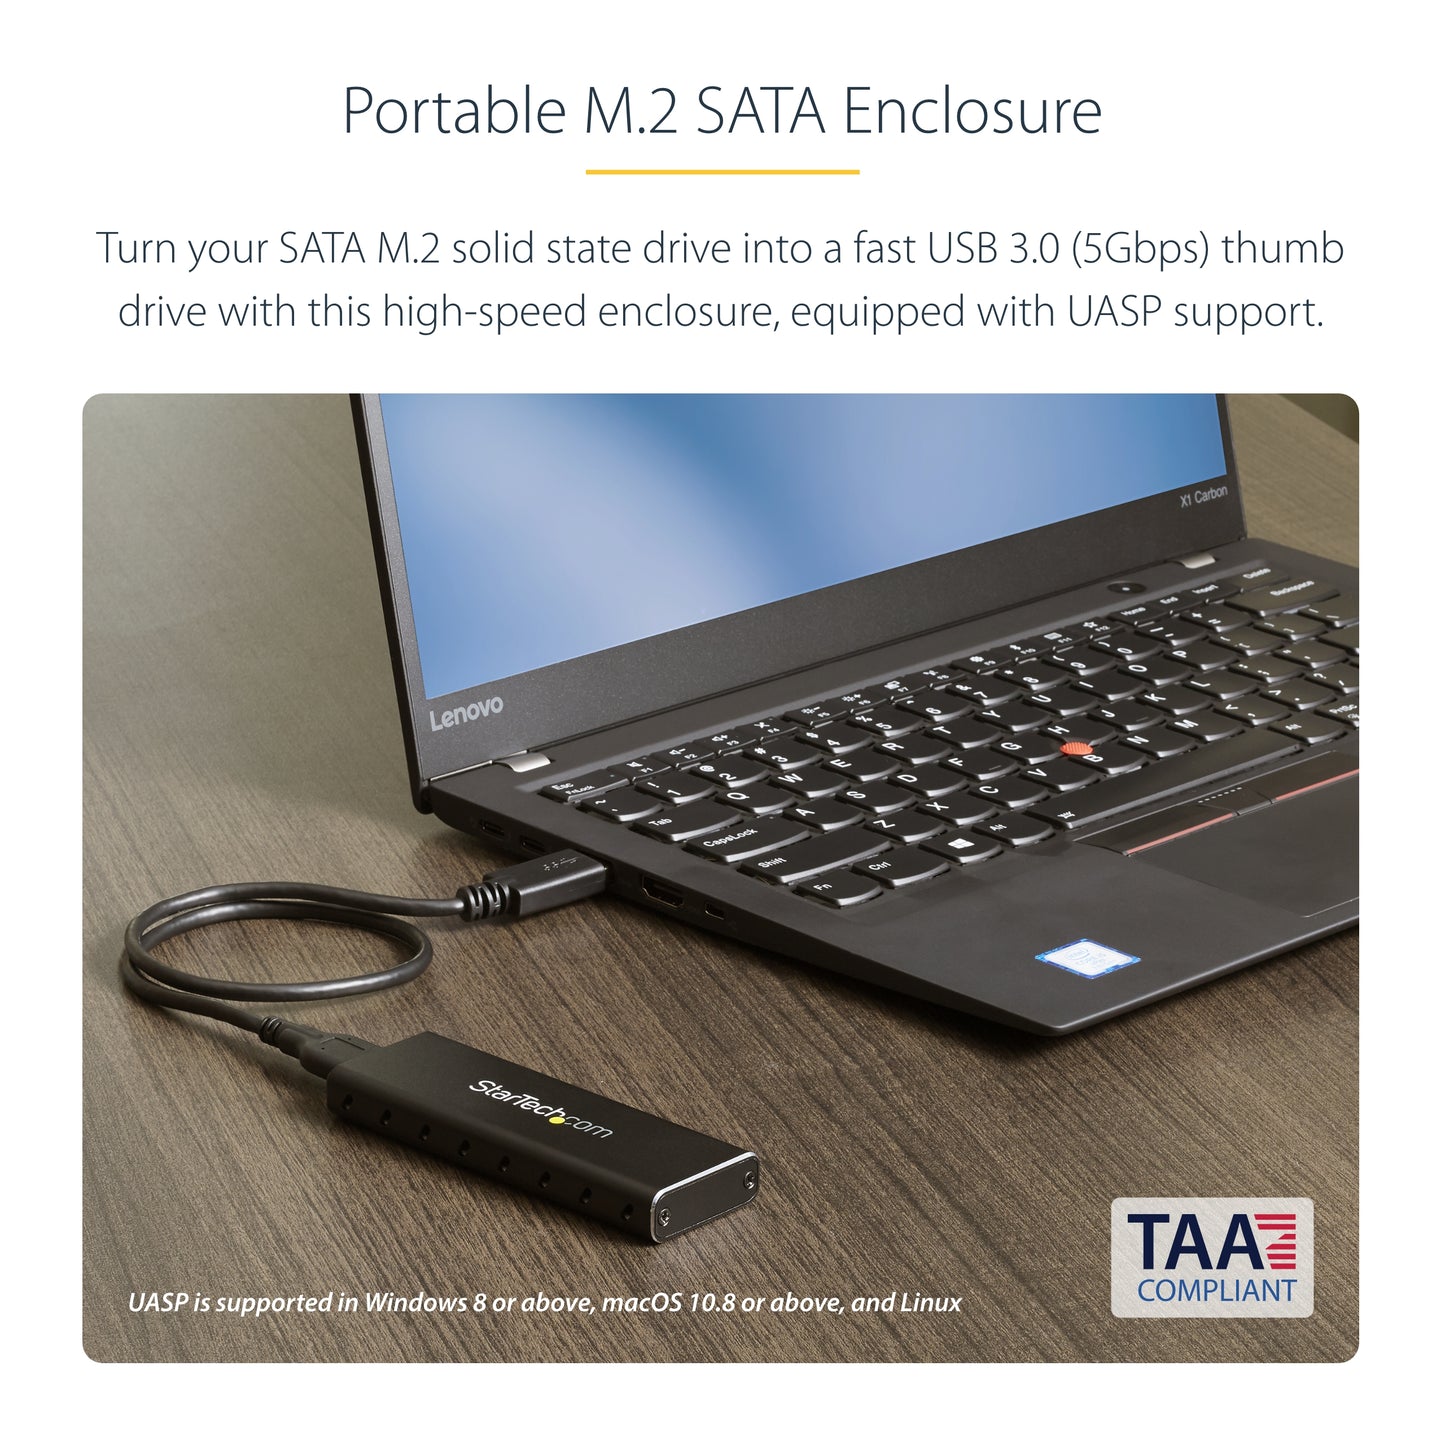 StarTech.com M.2 SSD Enclosure for M.2 SATA SSDs - USB 3.0 (5Gbps) with UASP-7